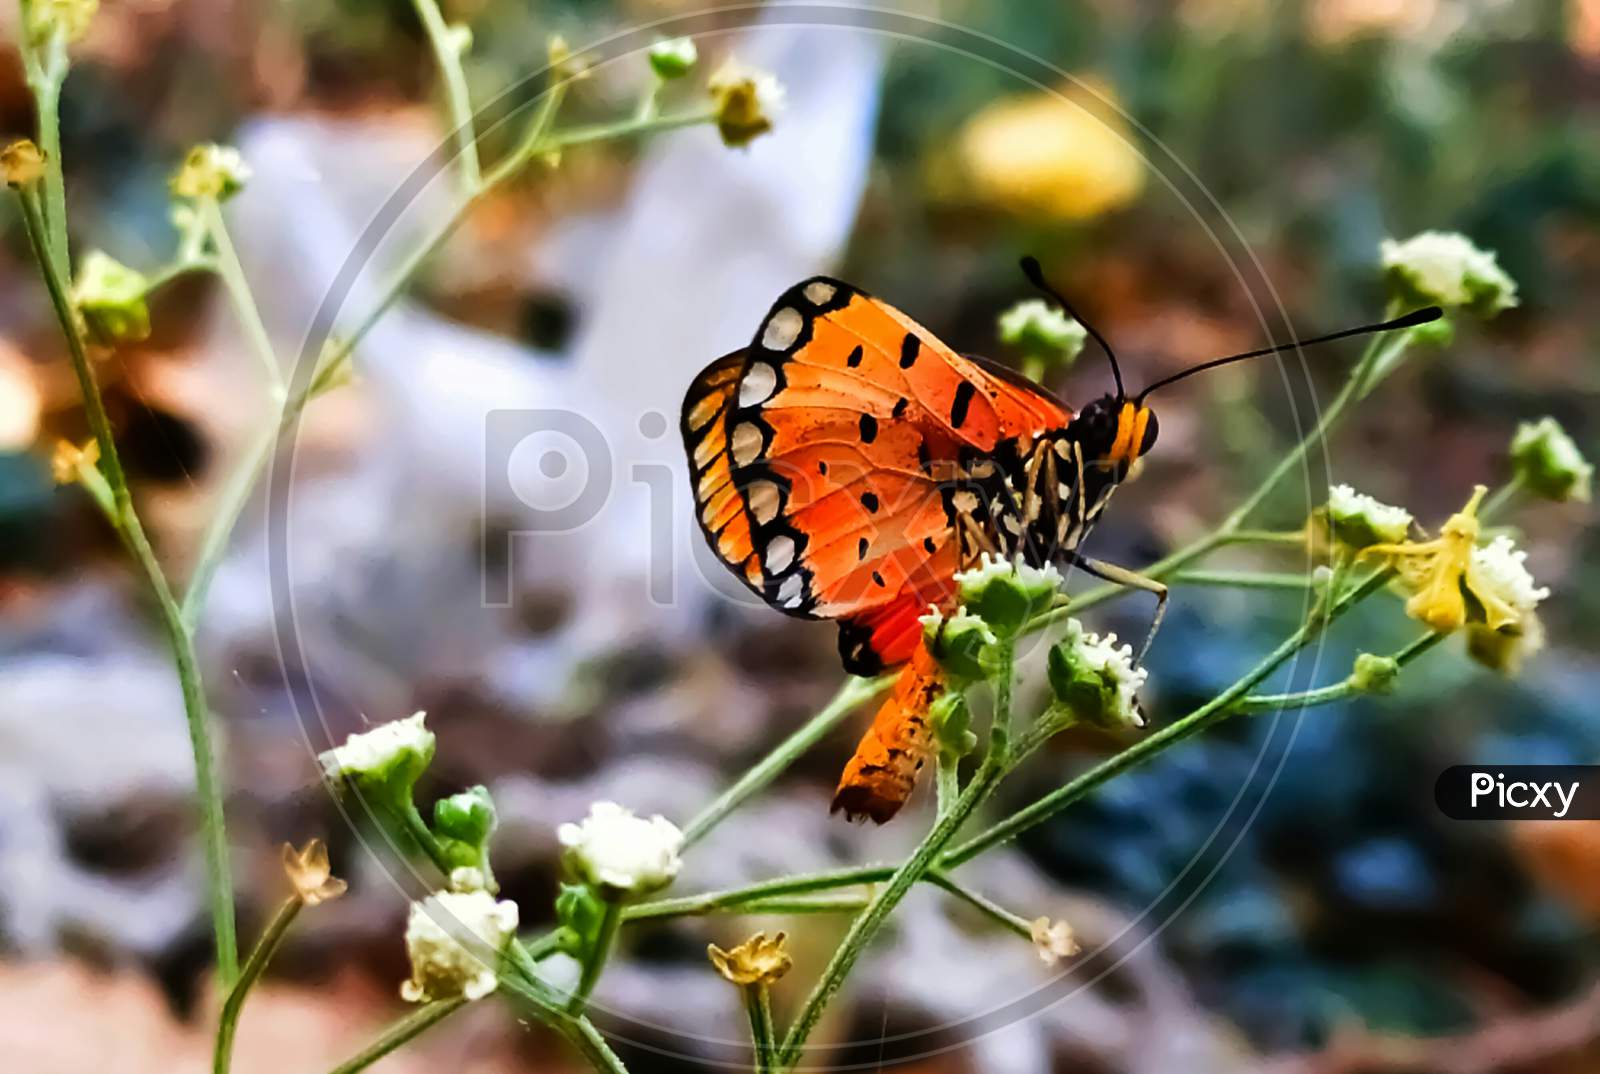 Monarch butterfly female